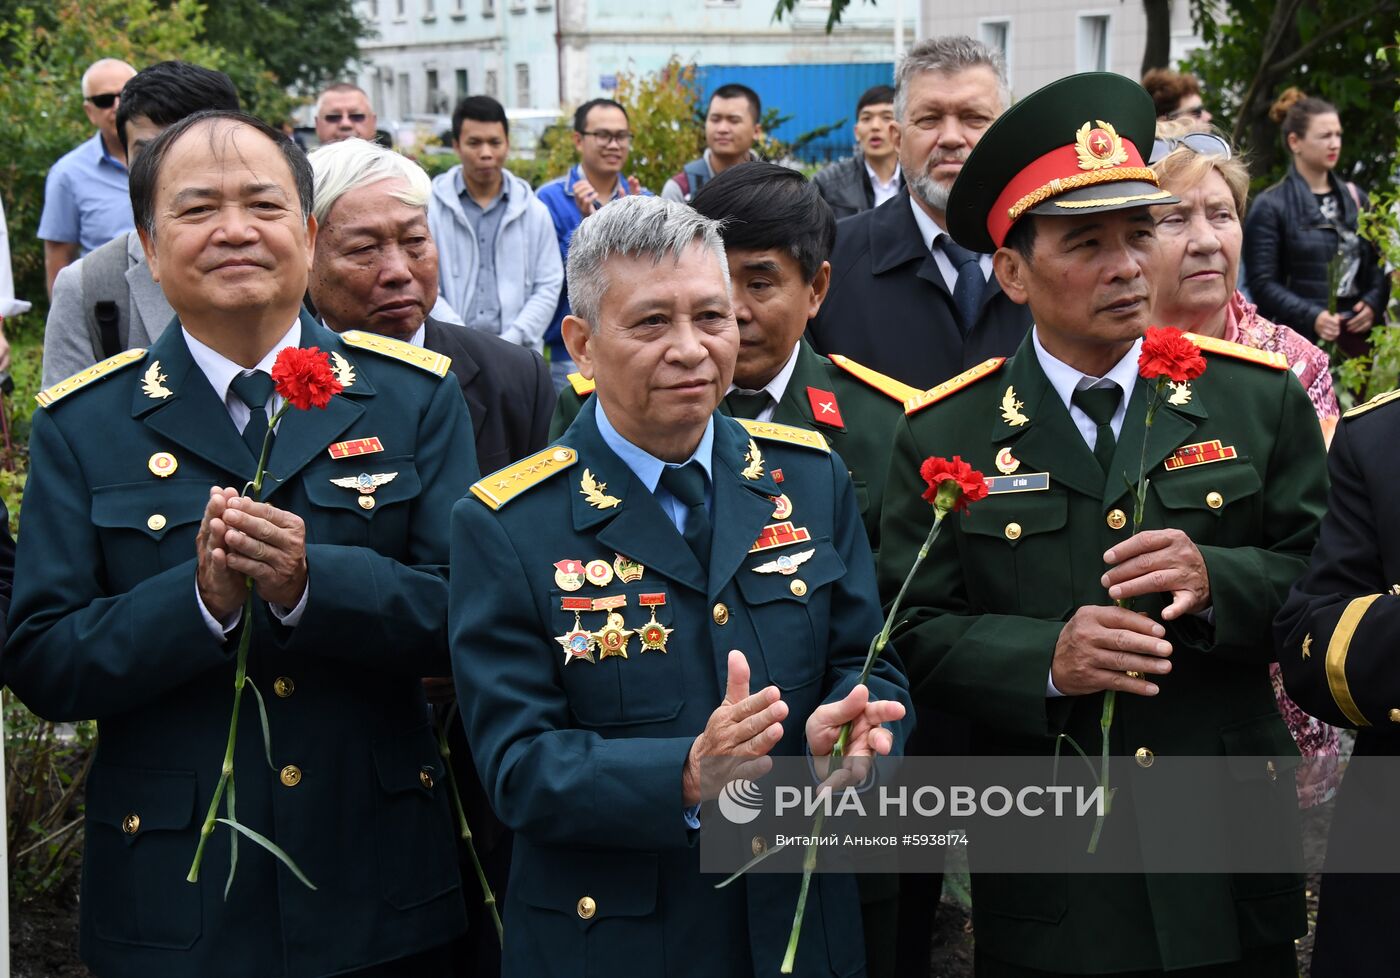 Открытие памятника первому президенту Вьетнама Хо Ши Мину во Владивостоке